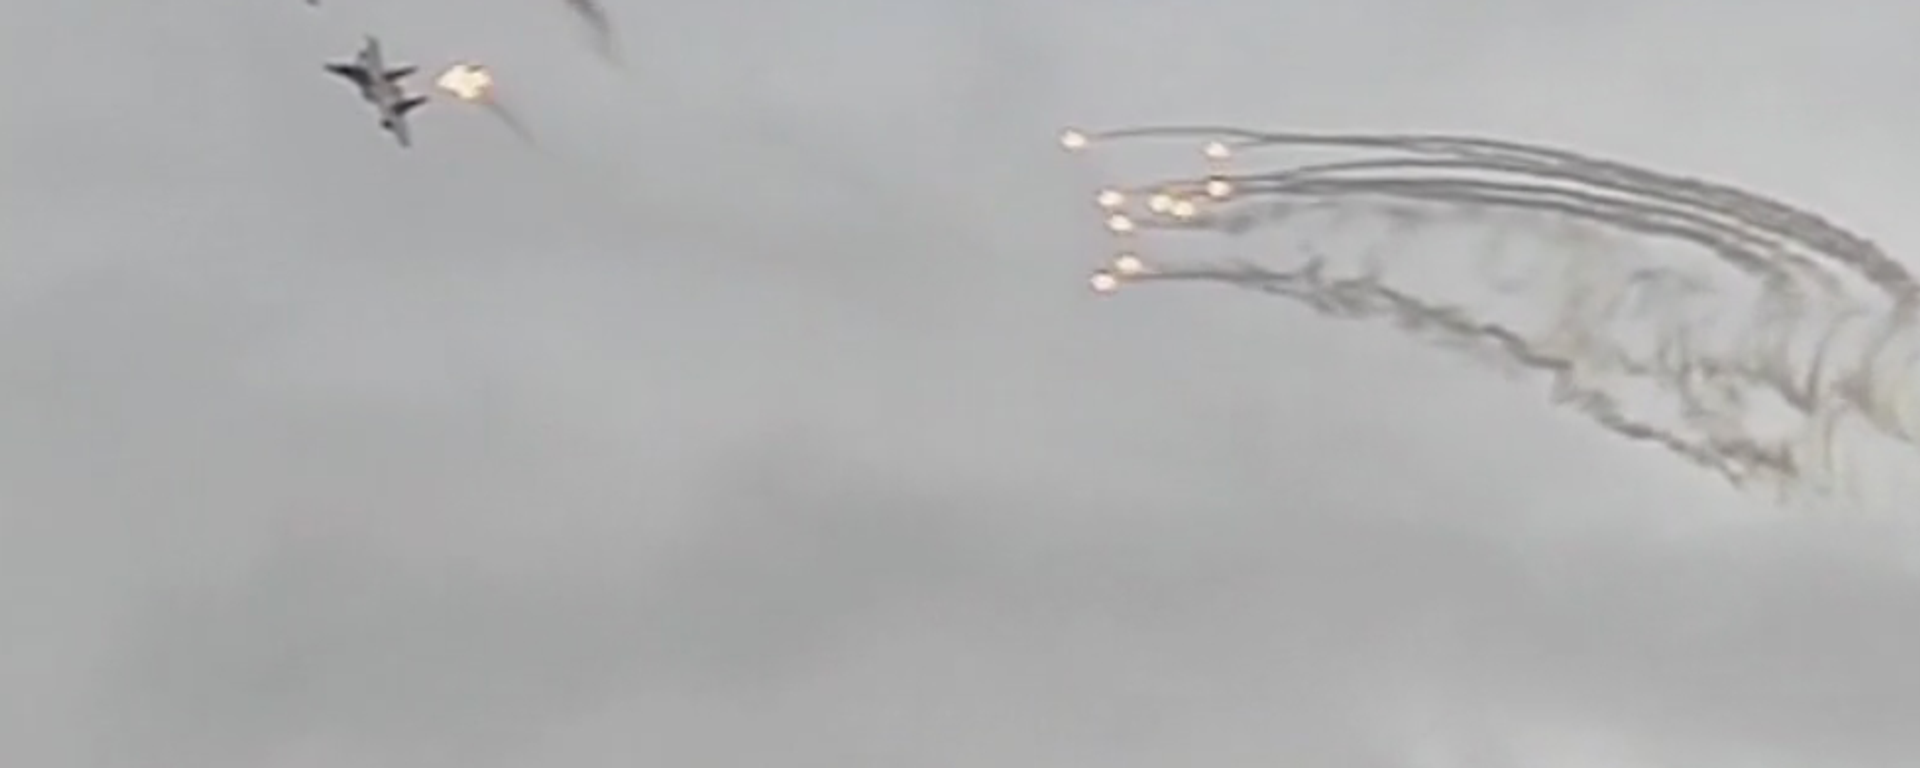 Опубликовано видео применения ракетного комплекса Кинжал - Sputnik Латвия, 1920, 11.08.2019